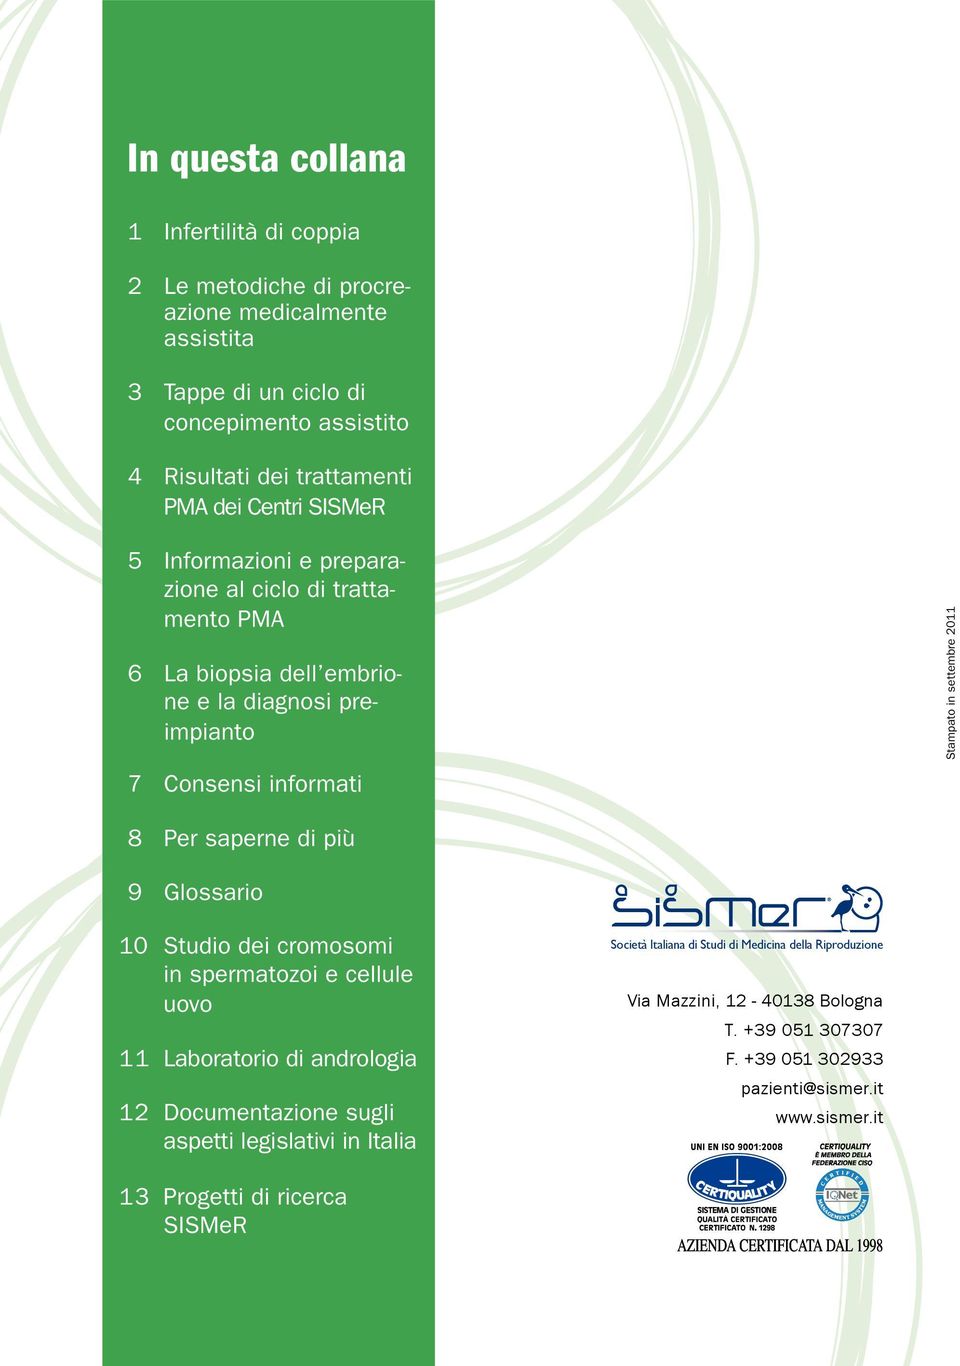 8 Per saperne di più 9 Glossario 10 Studio dei cromosomi in spermatozoi e cellule uovo 11 Laboratorio di andrologia 12 Documentazione sugli aspetti legislativi in Italia 13